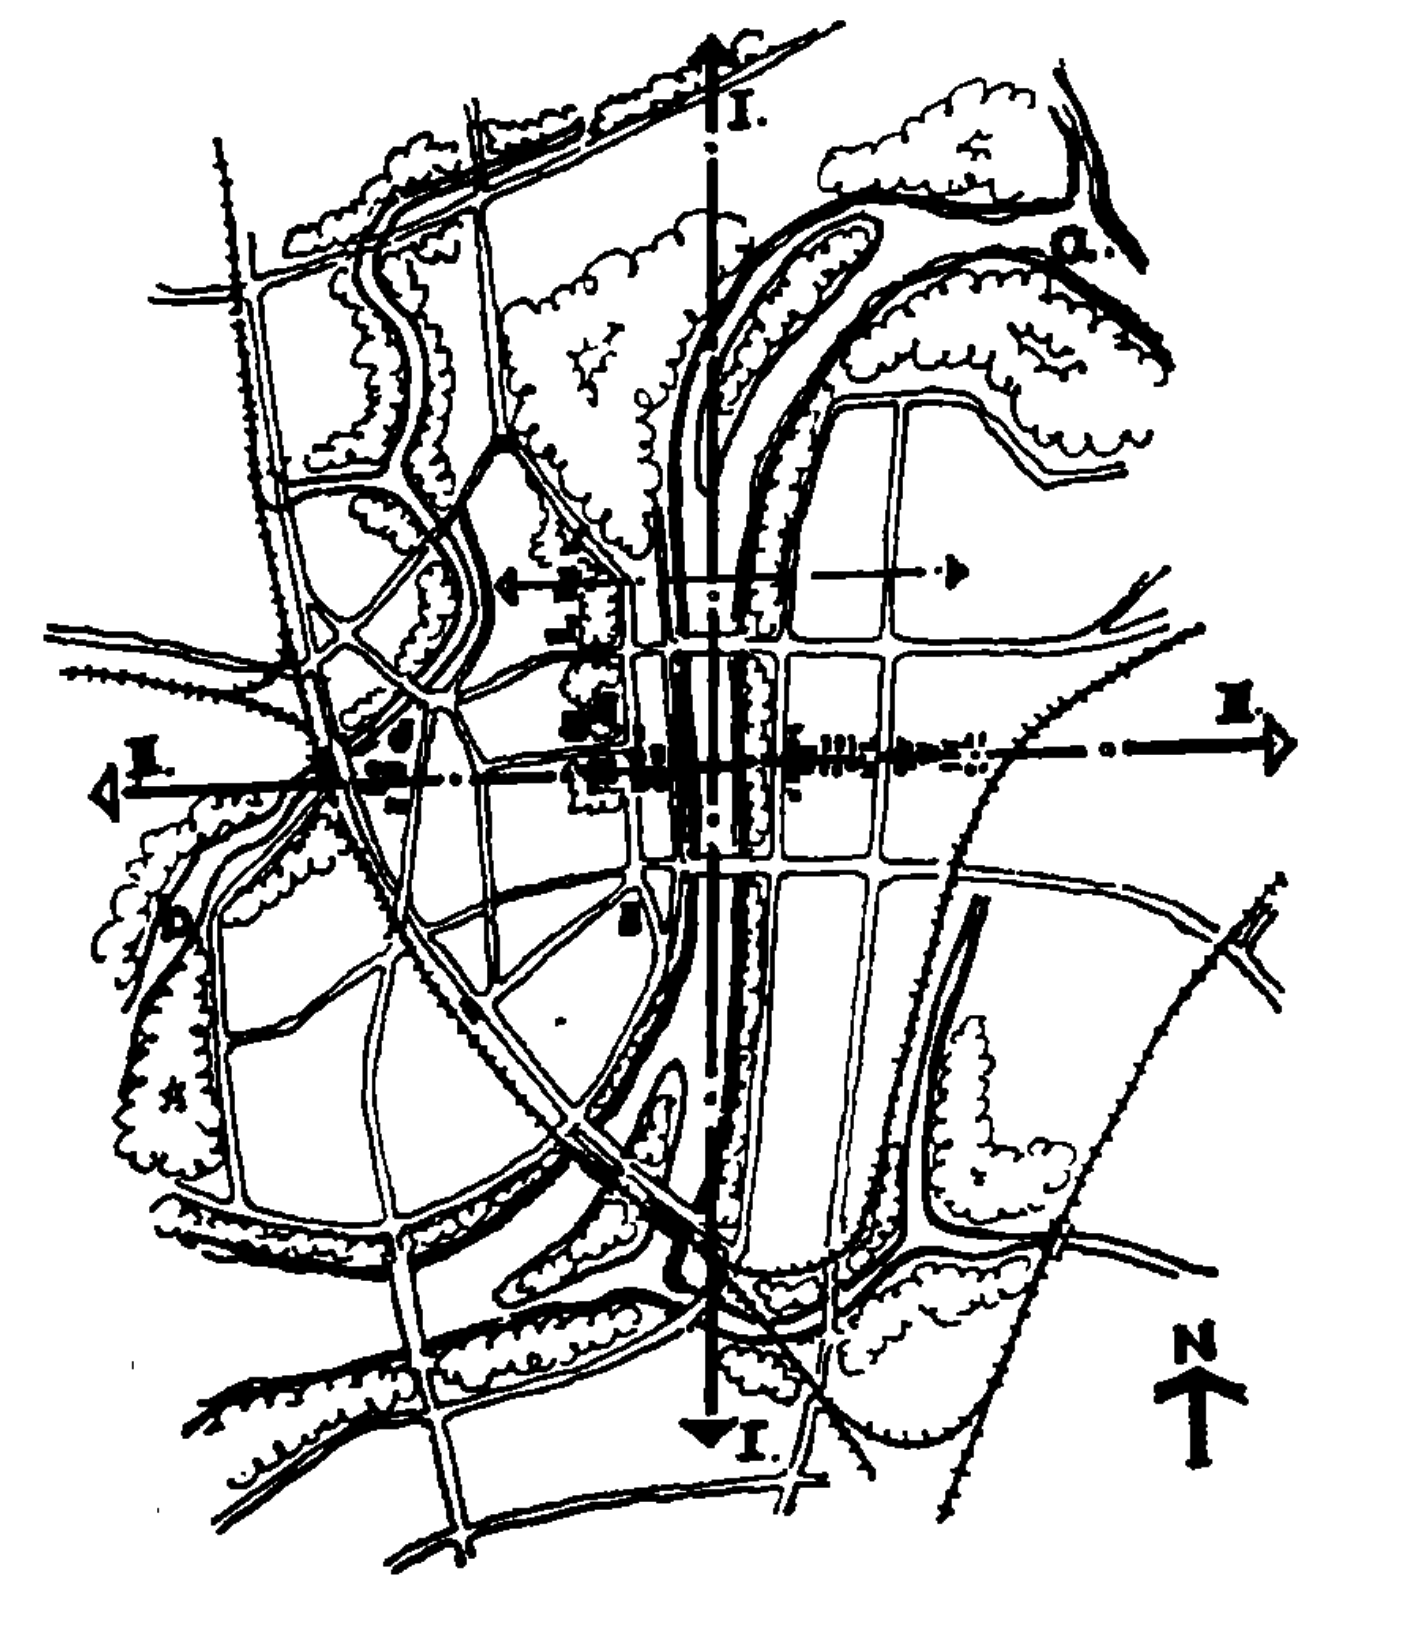 15 平壤市中心空间构图轴线体系[6]